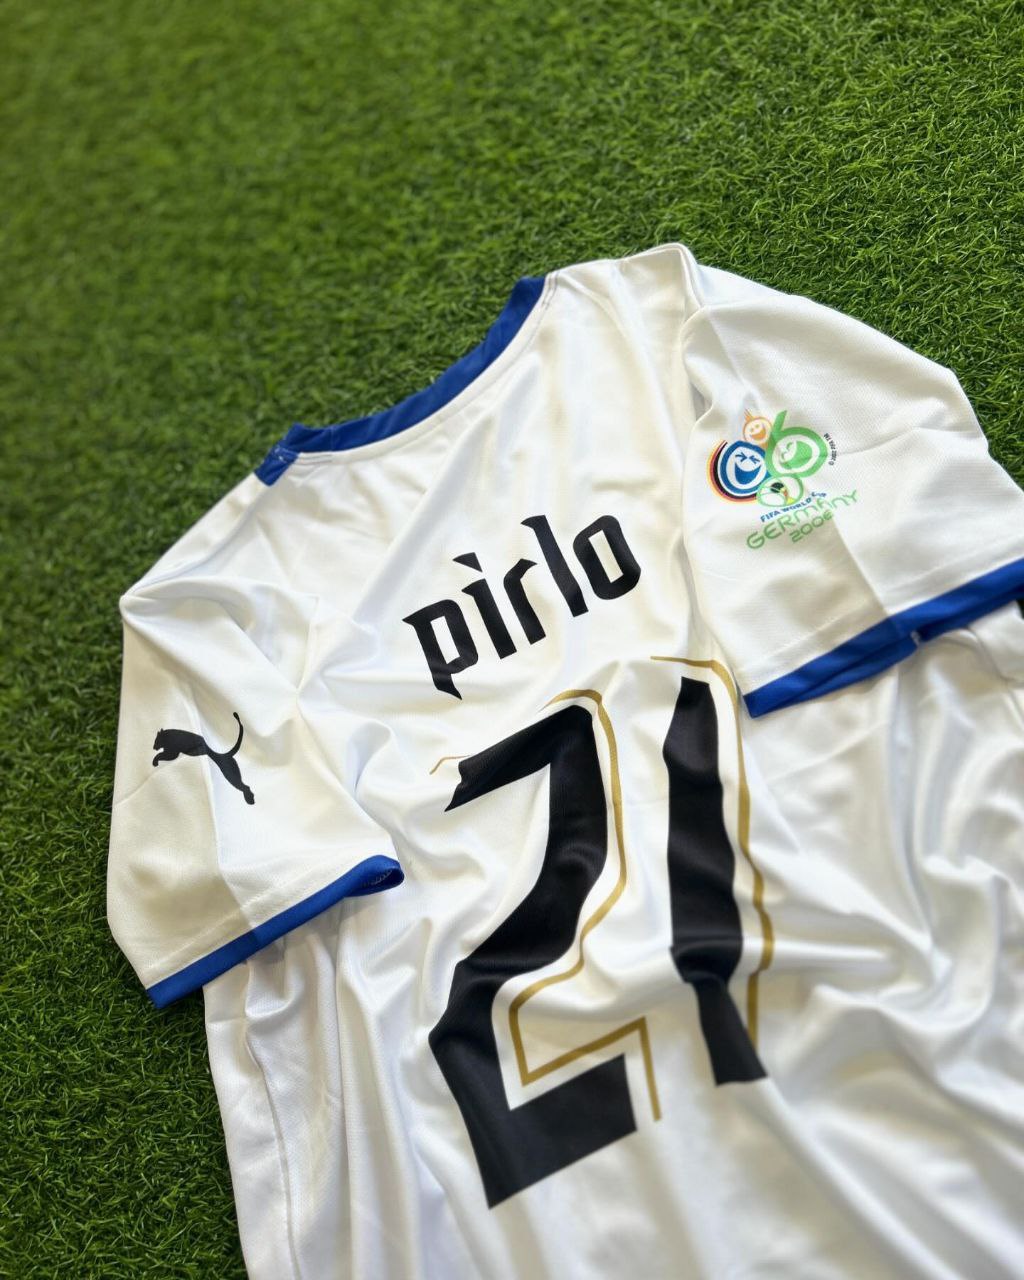 Andrea Pirlo İtalya 2006 Dünya Kupası Almanya Deplasman Beyaz Retro Forma